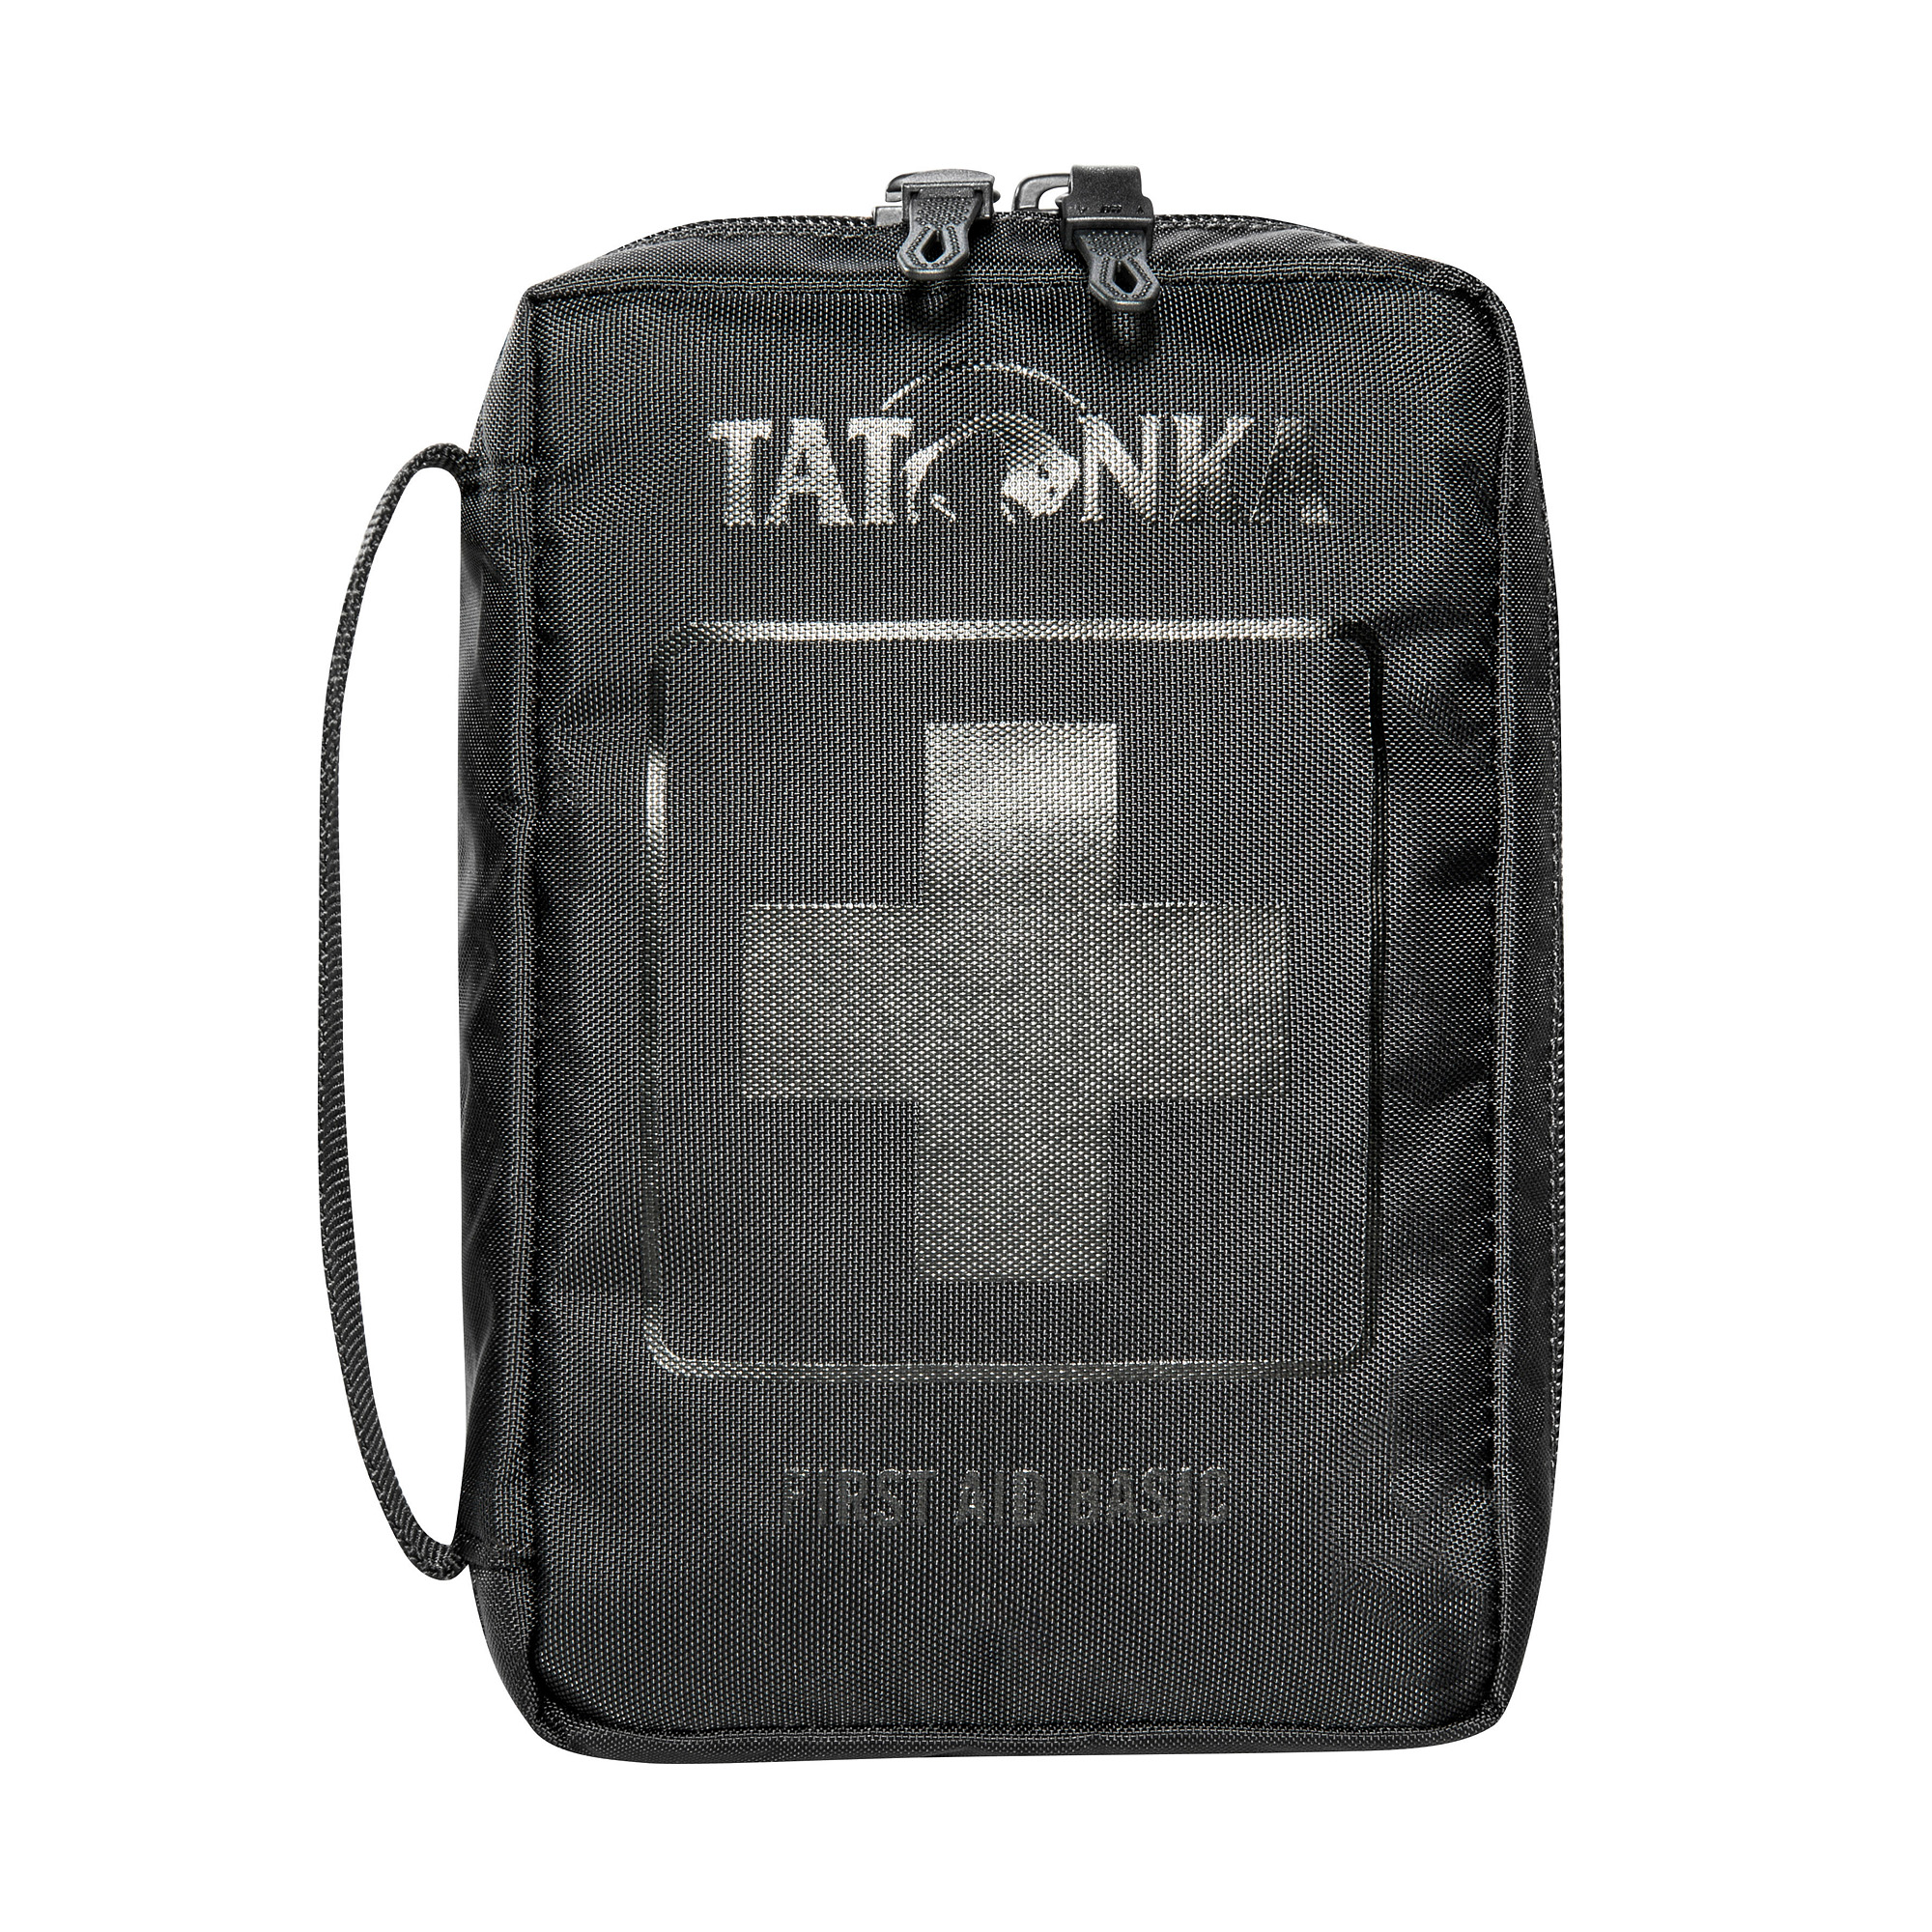 Tatonka First Aid Basic black schwarz Rucksack-Zubehör 4013236341225